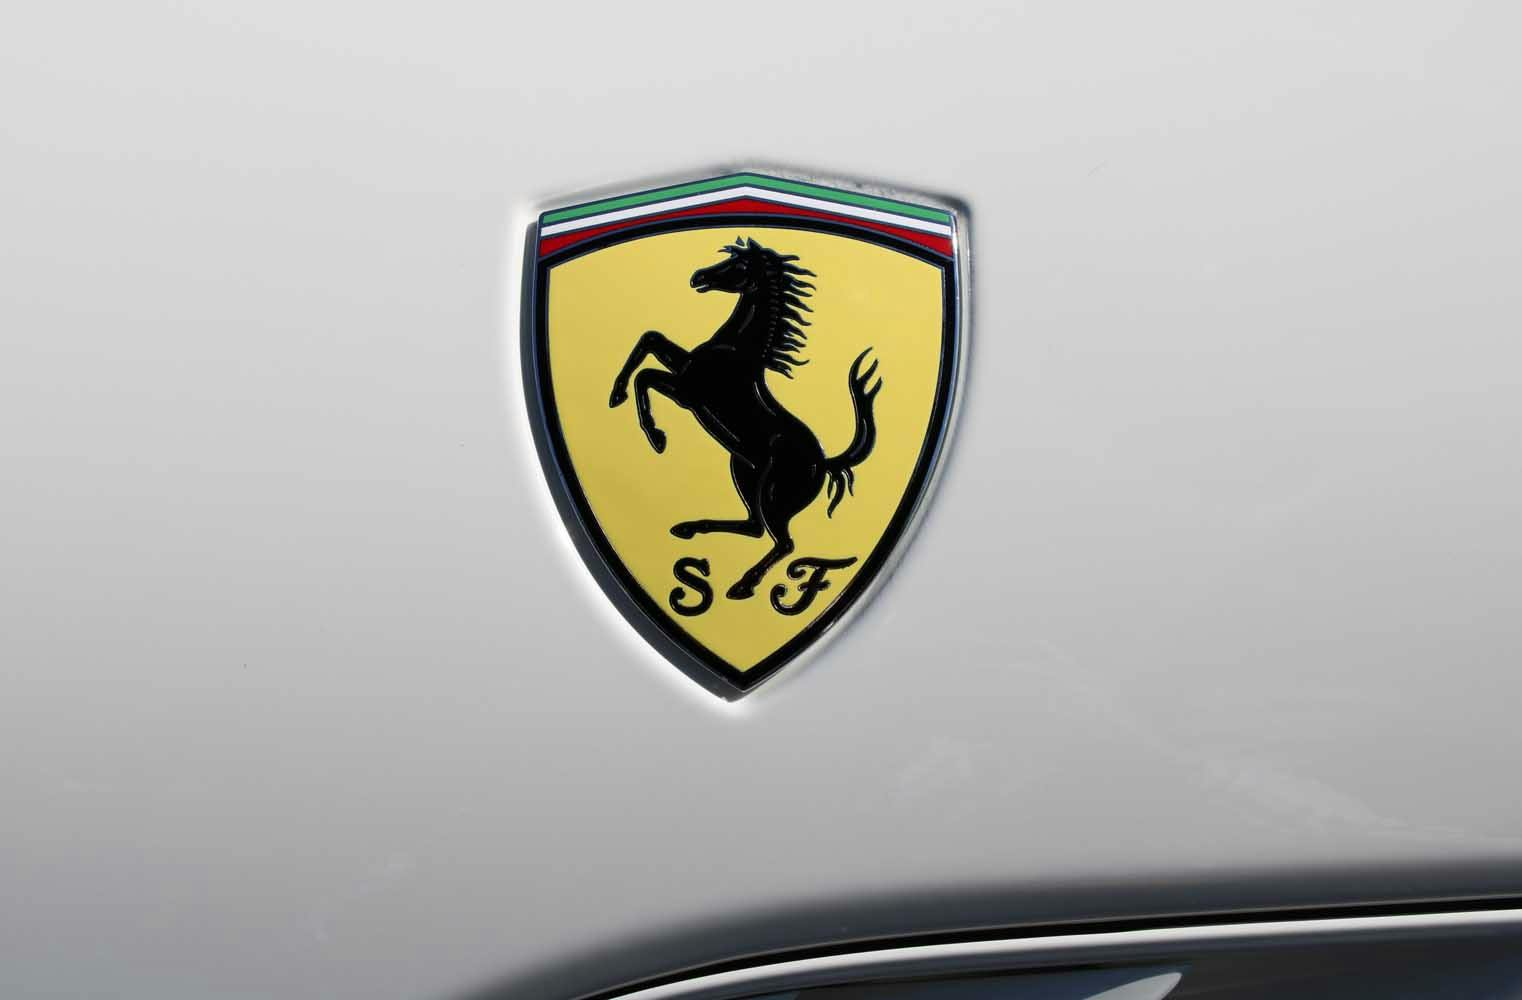 Ferrari California 30 fahren | 30 Min. Extraklasse